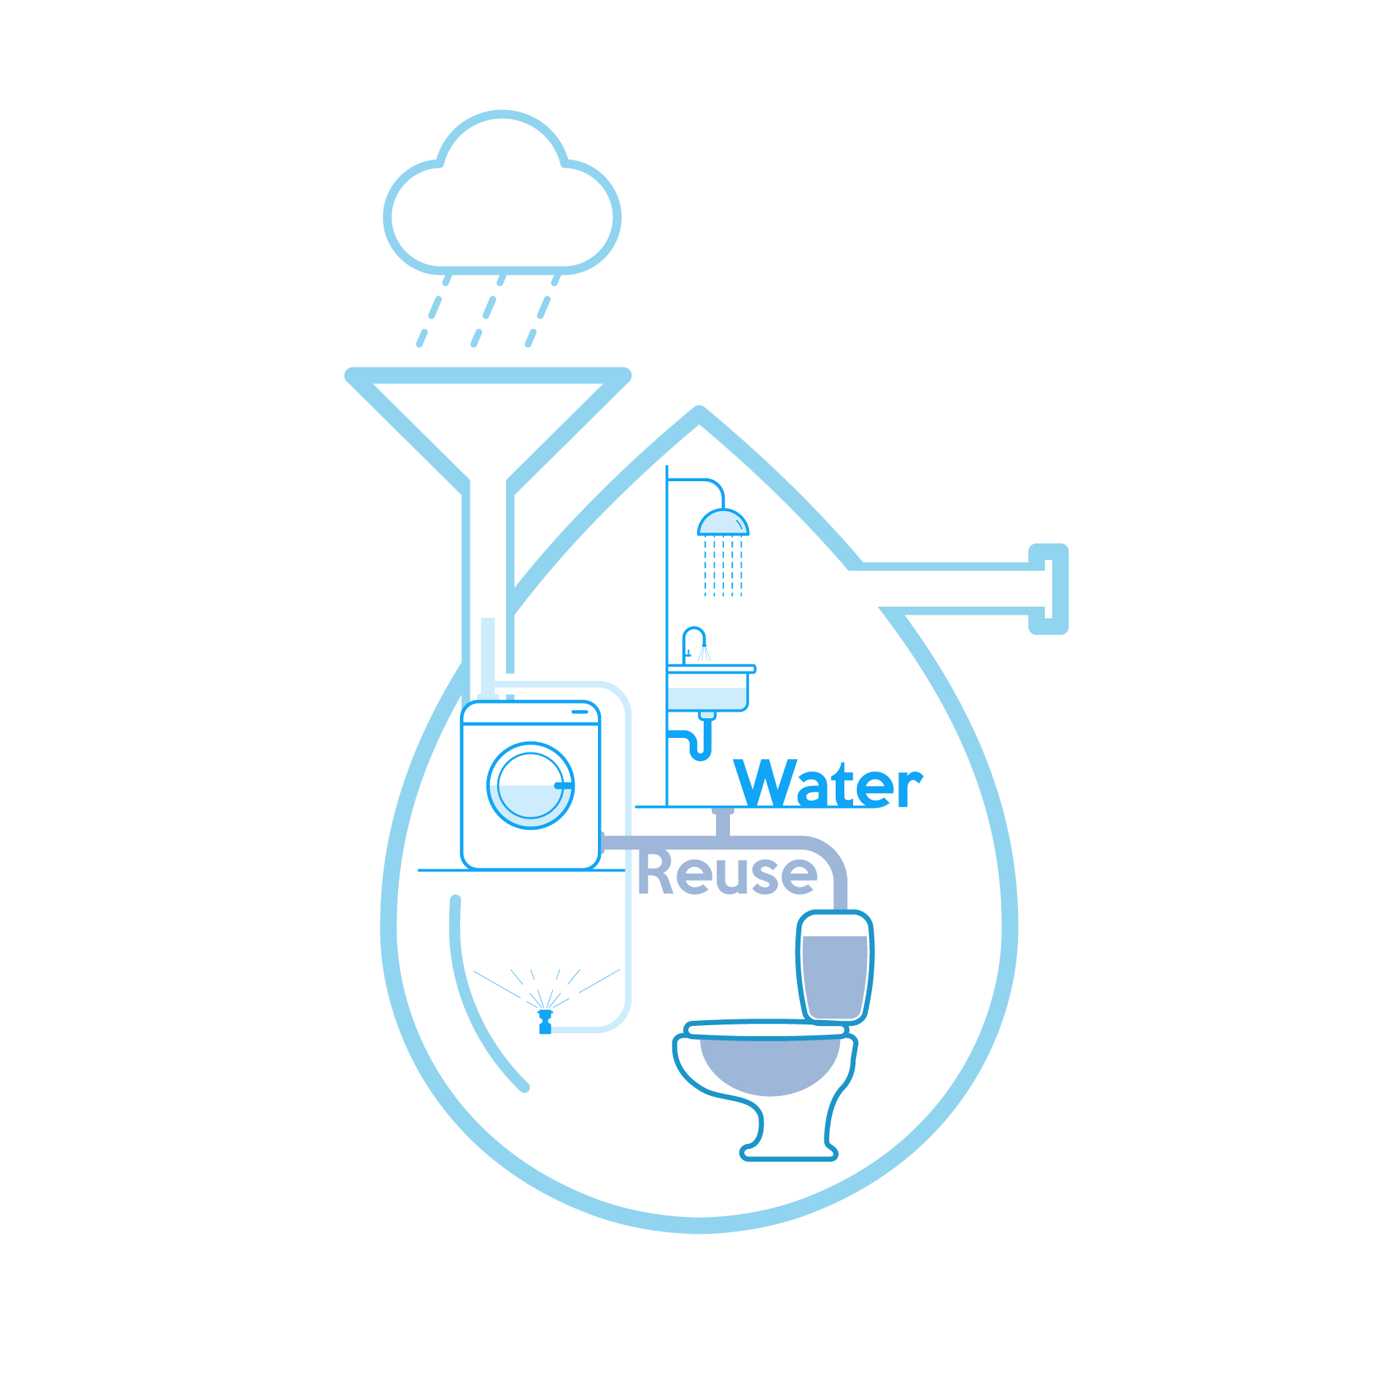 Een grijswatersysteem is een installatie die het grijs water van douches, baden en wasmachines behandelt met als doel hergebruik voor het spoelen van WC’s/toiletten. 